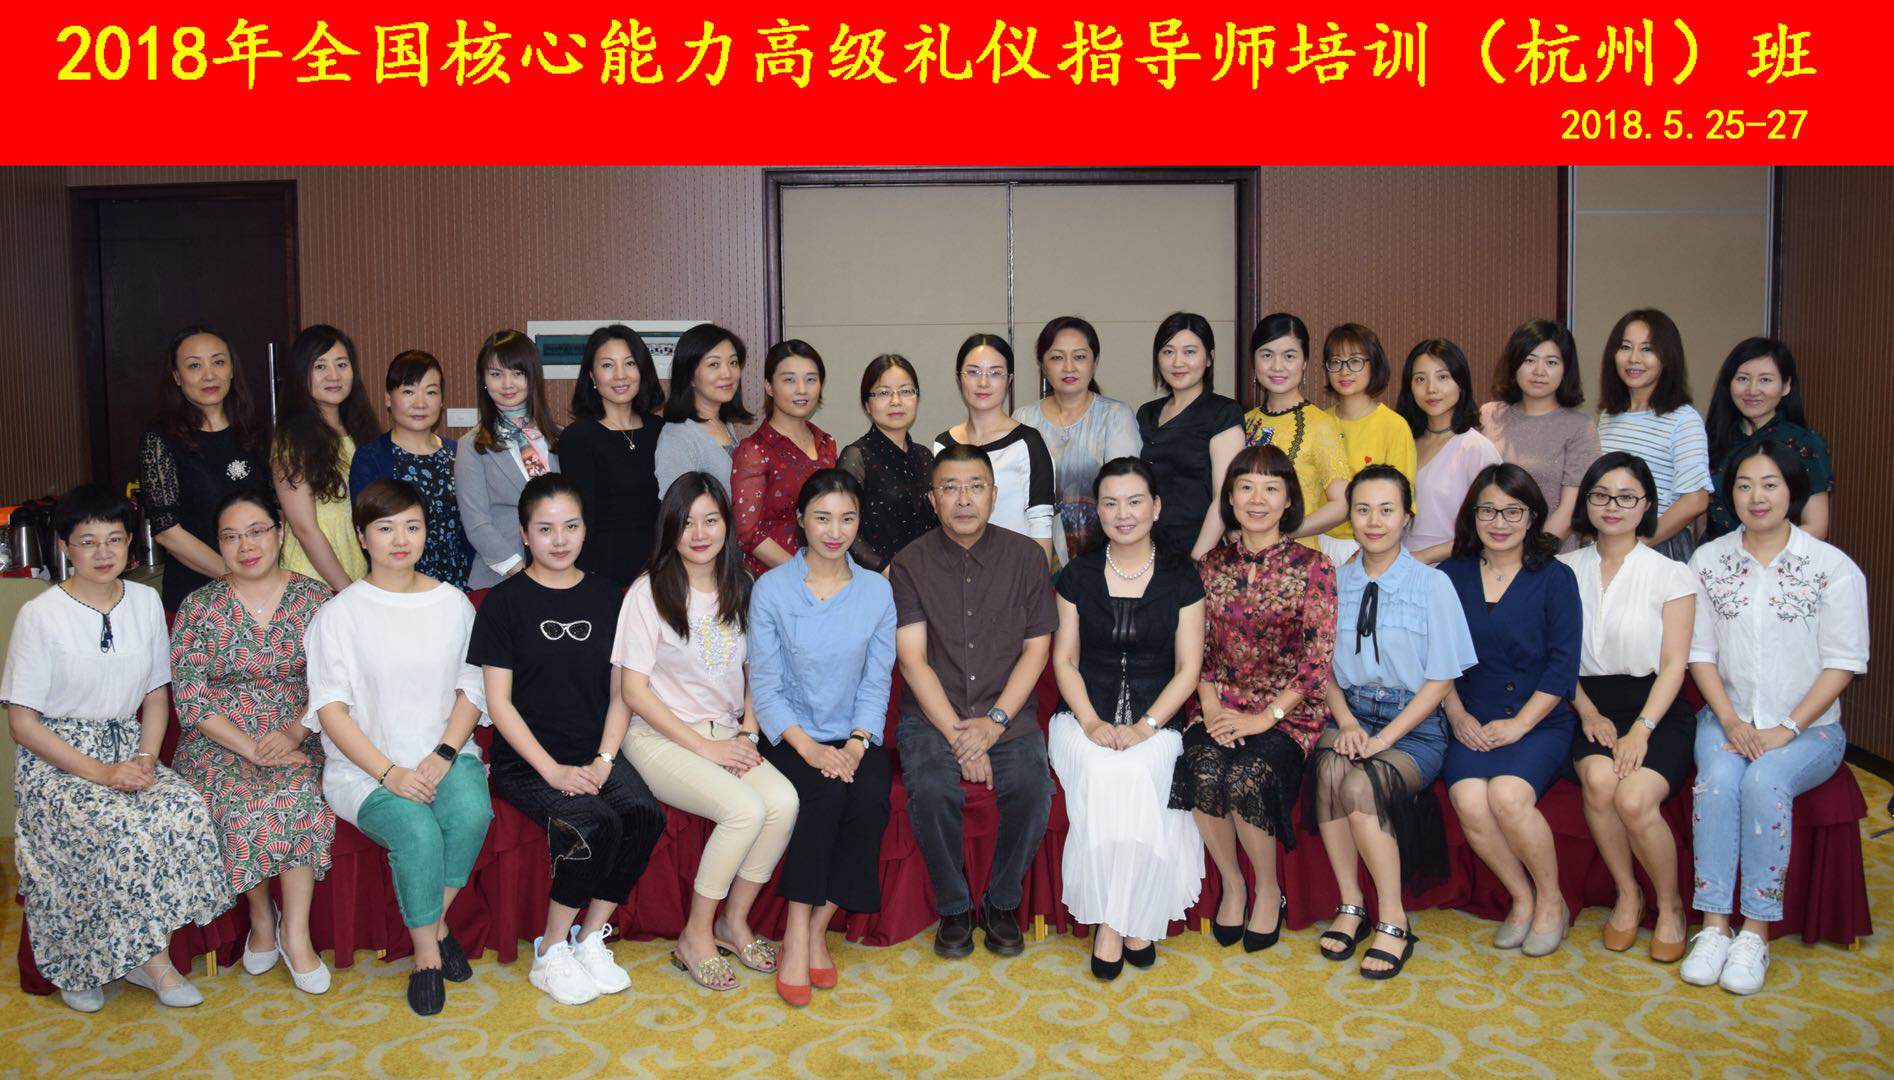 2018.05.25：第424期CVCC高级礼仪指导师培训班在杭州举行